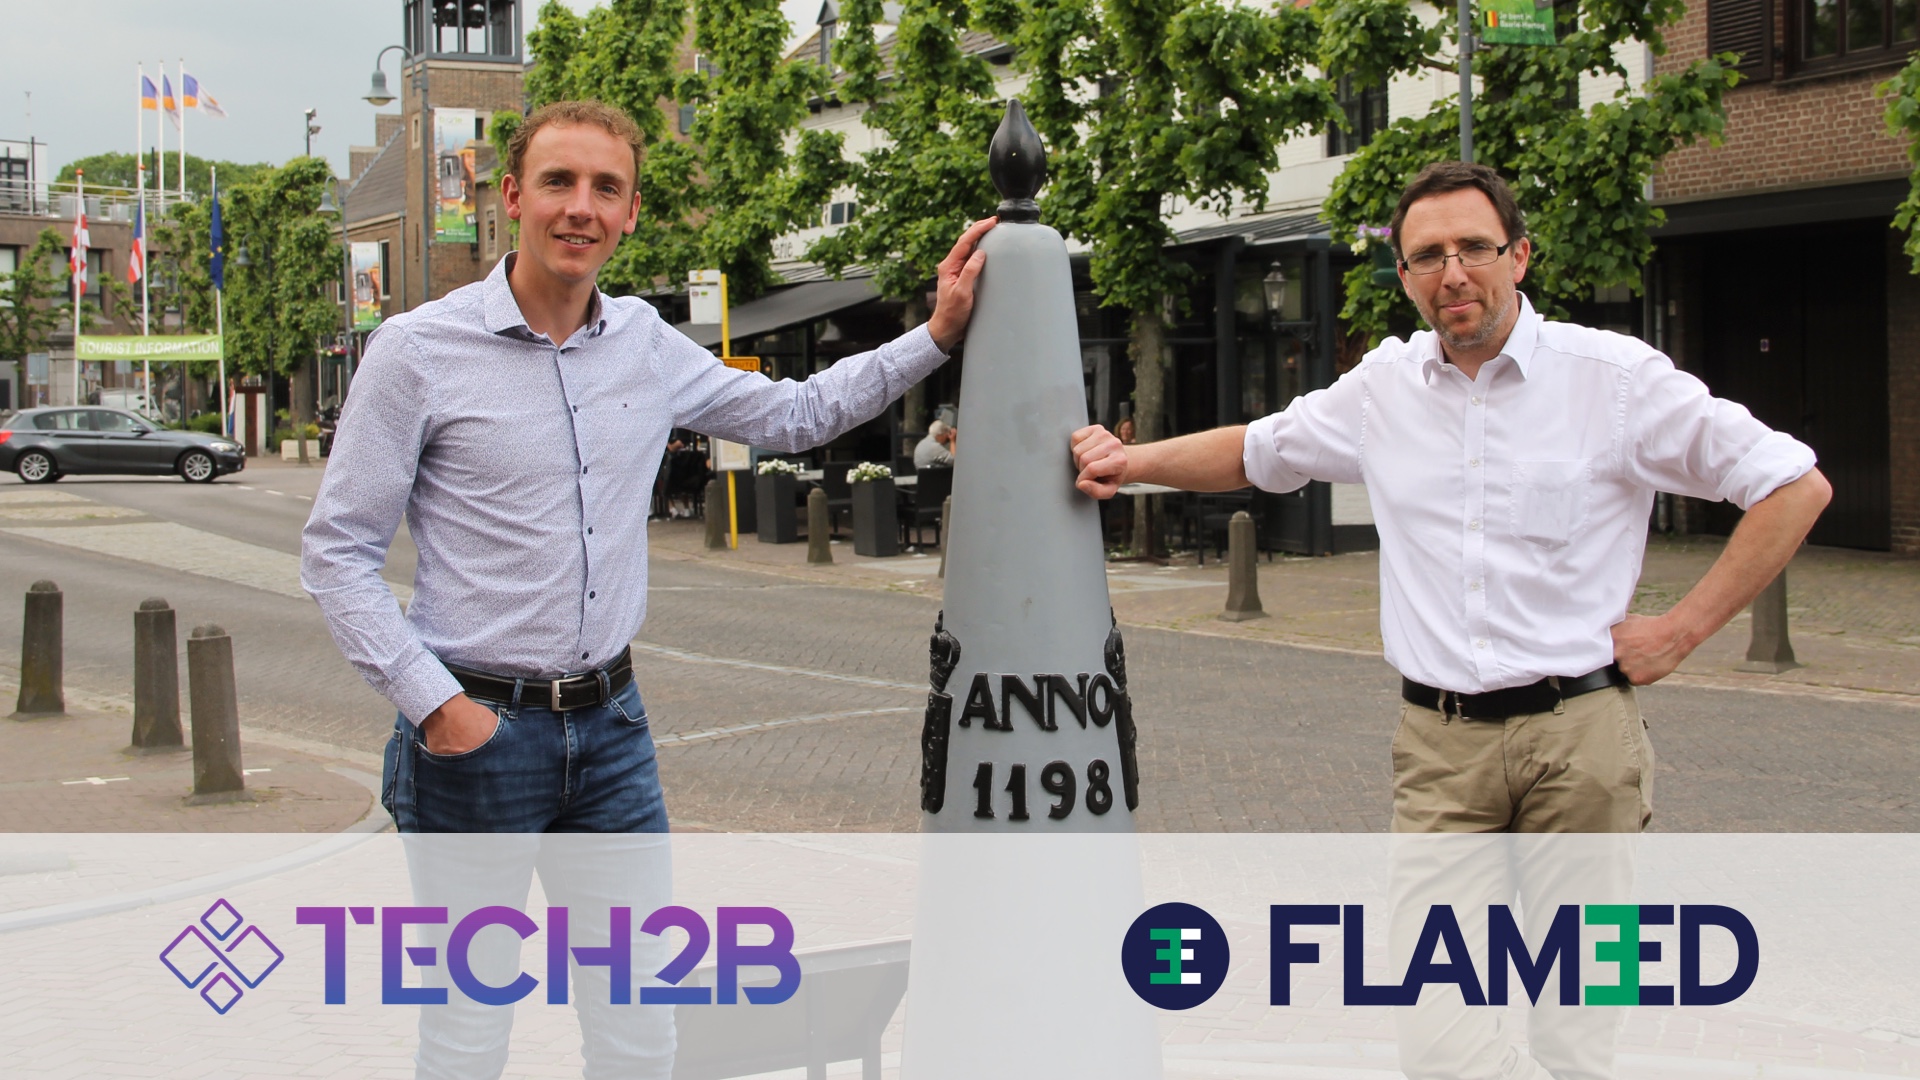 Tech2B en Flam3D verbinden samen vraag en aanbod in de maakindustrie.